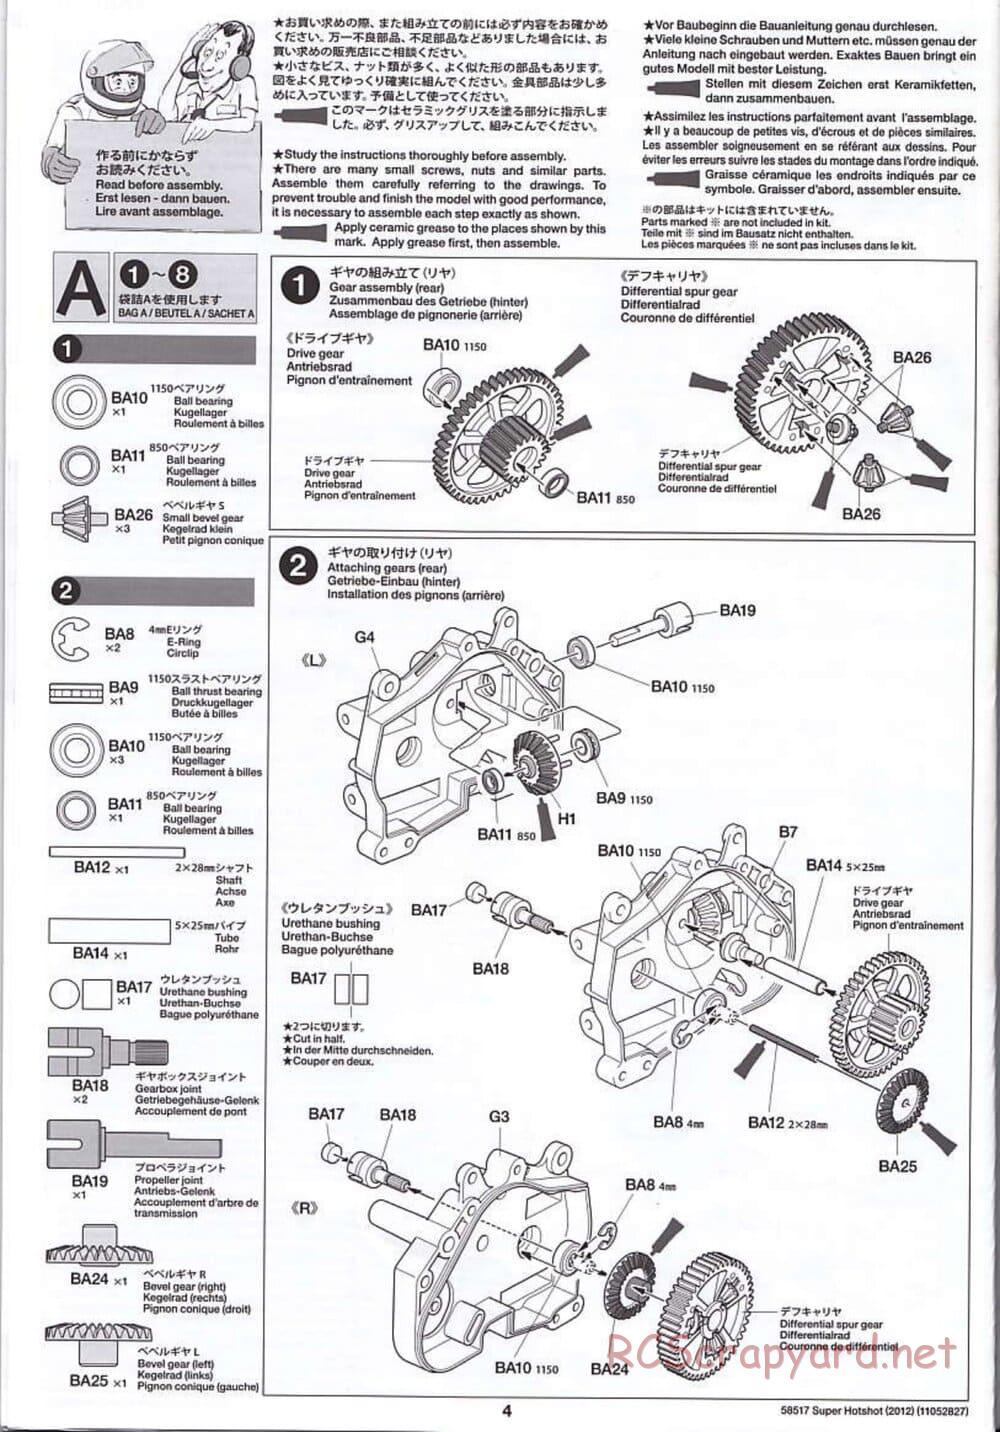 Tamiya - Super Hotshot 2012 - HS Chassis - Manual - Page 4